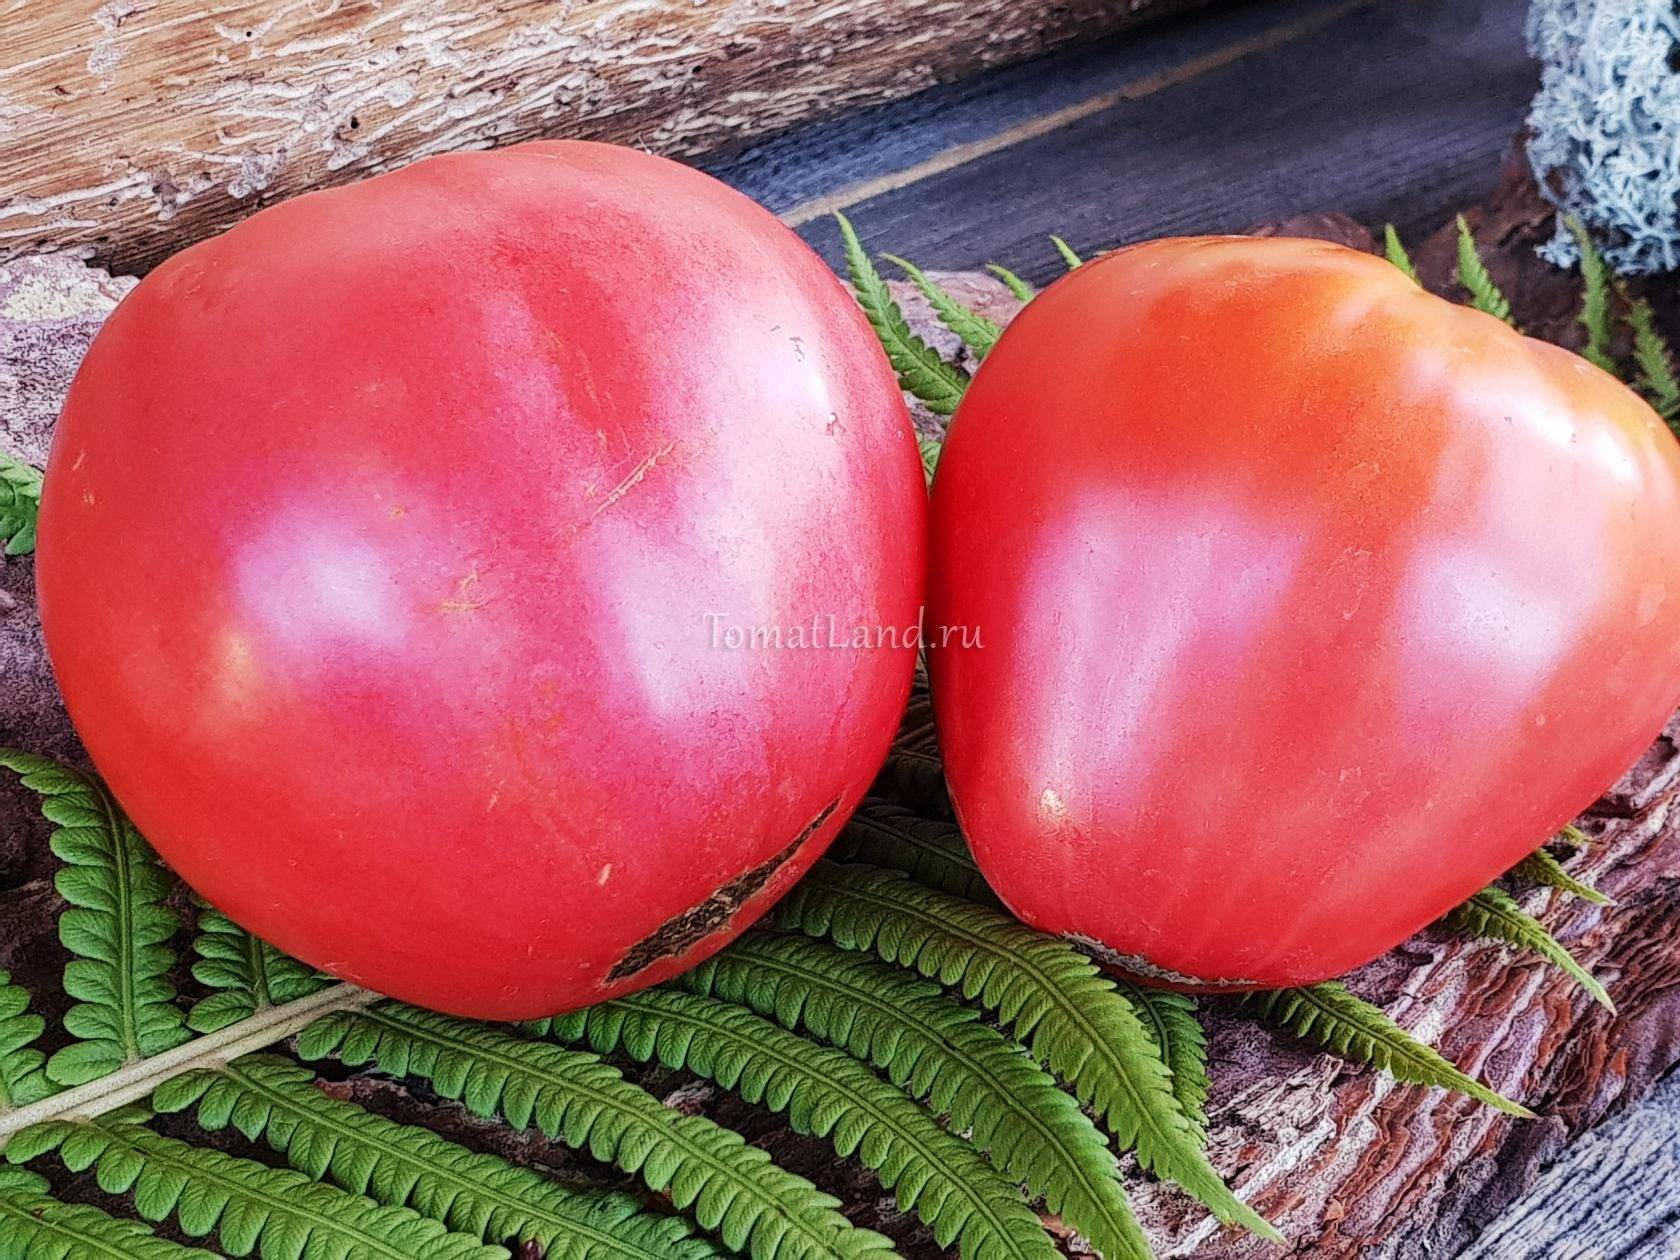 Характеристика и описание сорта томата сахарная настасья, его урожайность